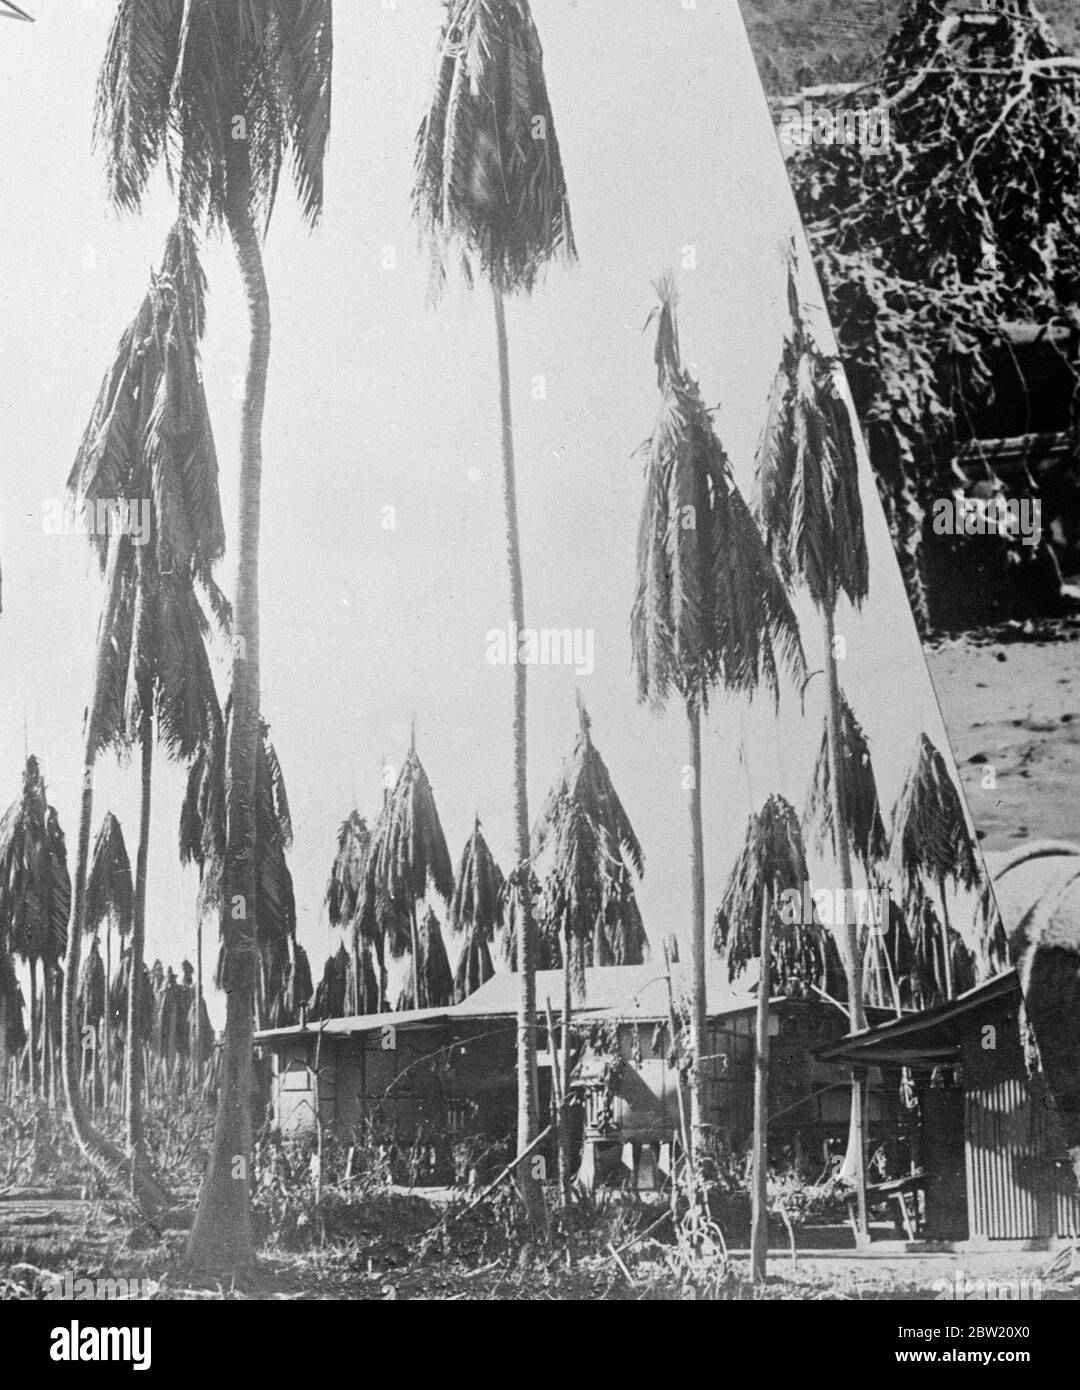 Erste Bilder von der Vulkankatastrophe auf der Insel Neuguinea. Drei Vulkane, zwei auf der Insel Vulcan und einer auf der Insel Matupi, brachen heftig unter Bimsstein und Schlamm auf den Dächern der Hauptstadt Rabaul der Insel Neubritanien in Neuguinea aus. Foto zeigt: Kokospalmen stark beschädigt durch Vulkanasche in Rabaul. 18 Juni 1937 Stockfoto